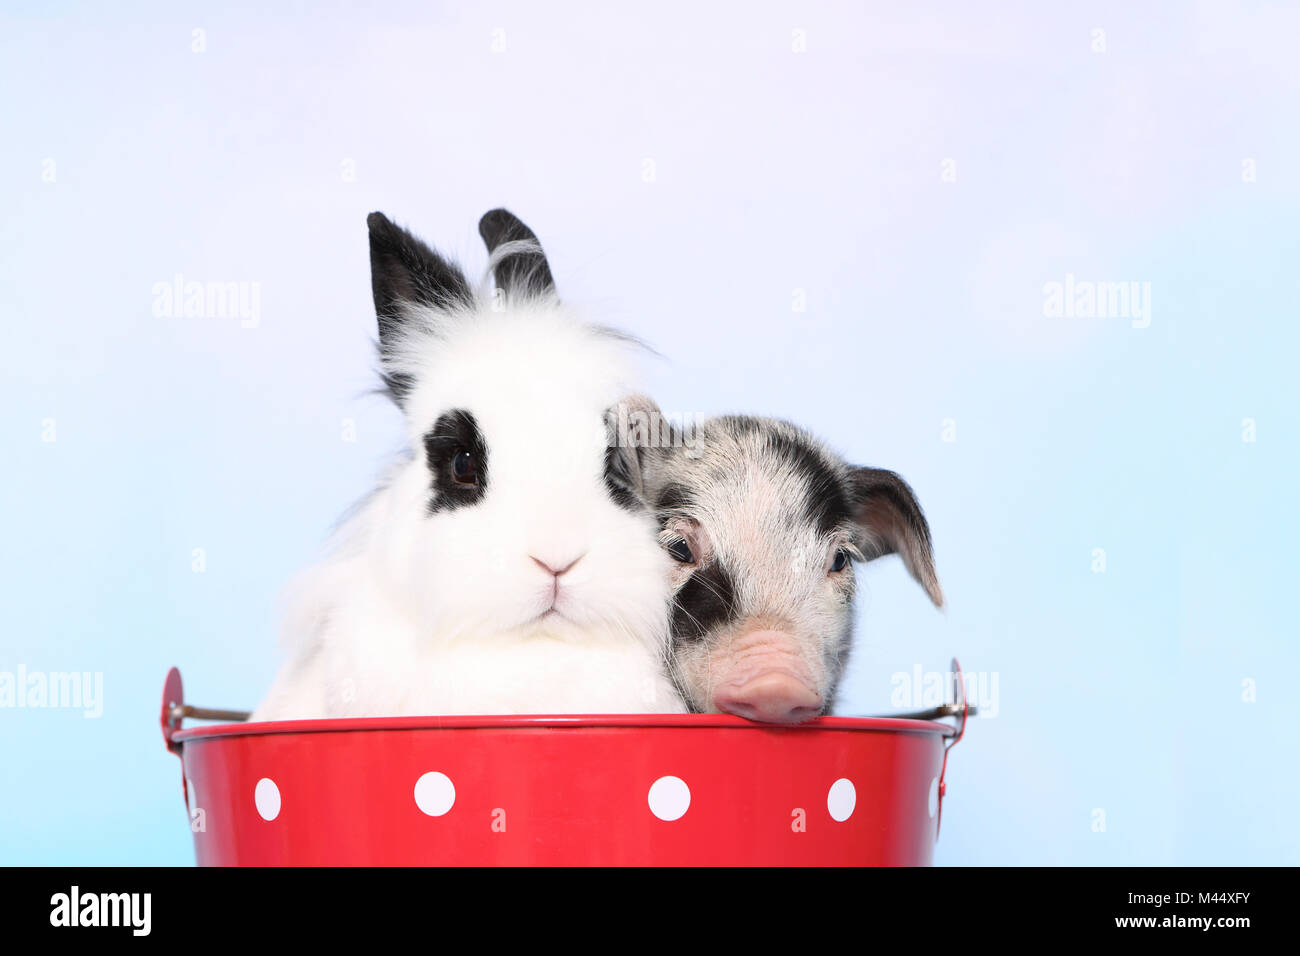 Porc domestique, Turopolje x ?. Porcinet (1 semaine) et Teddy lapin nain assis dans un grand seau rouge à pois blancs. Studio photo sur un fond beige. Allemagne Banque D'Images